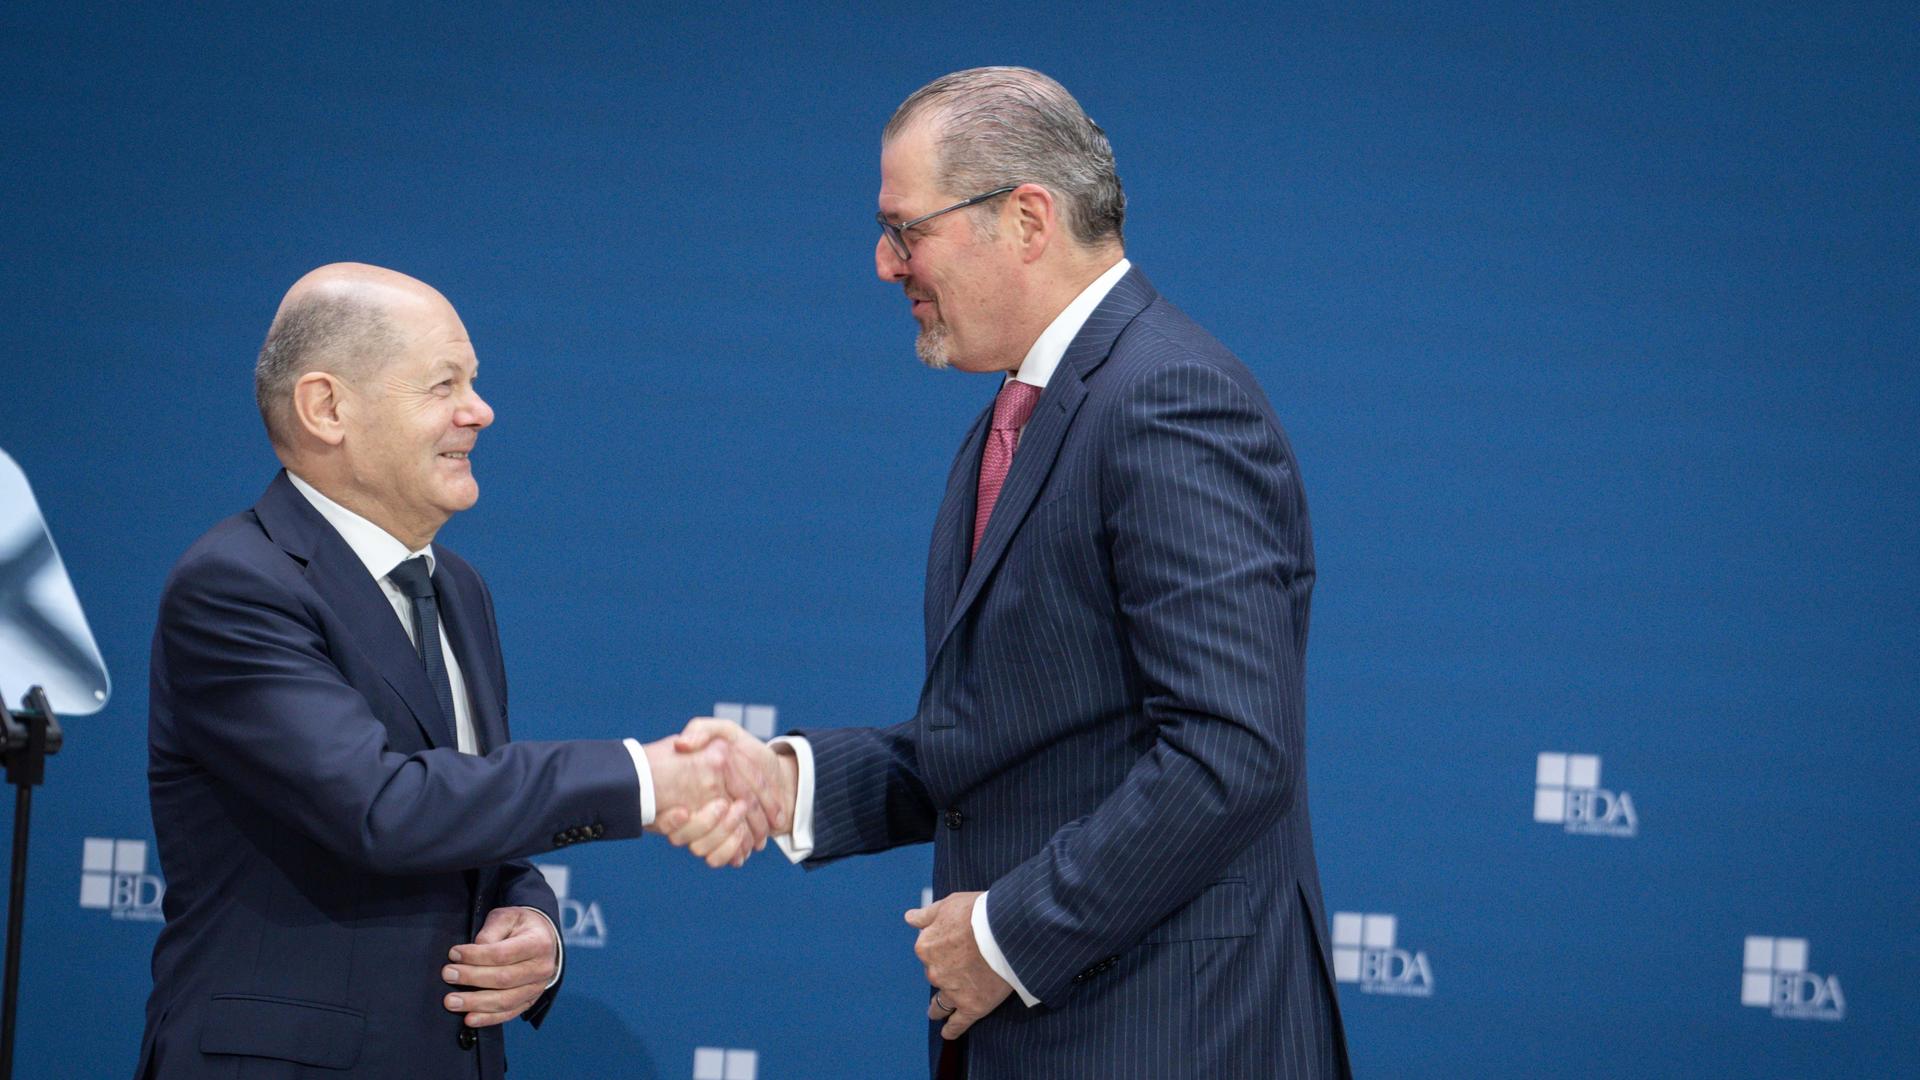 Bundeskanzler Olaf Scholz (SPD) und BDA-Präsident Rainer Dulger schütteln sich die Hände.